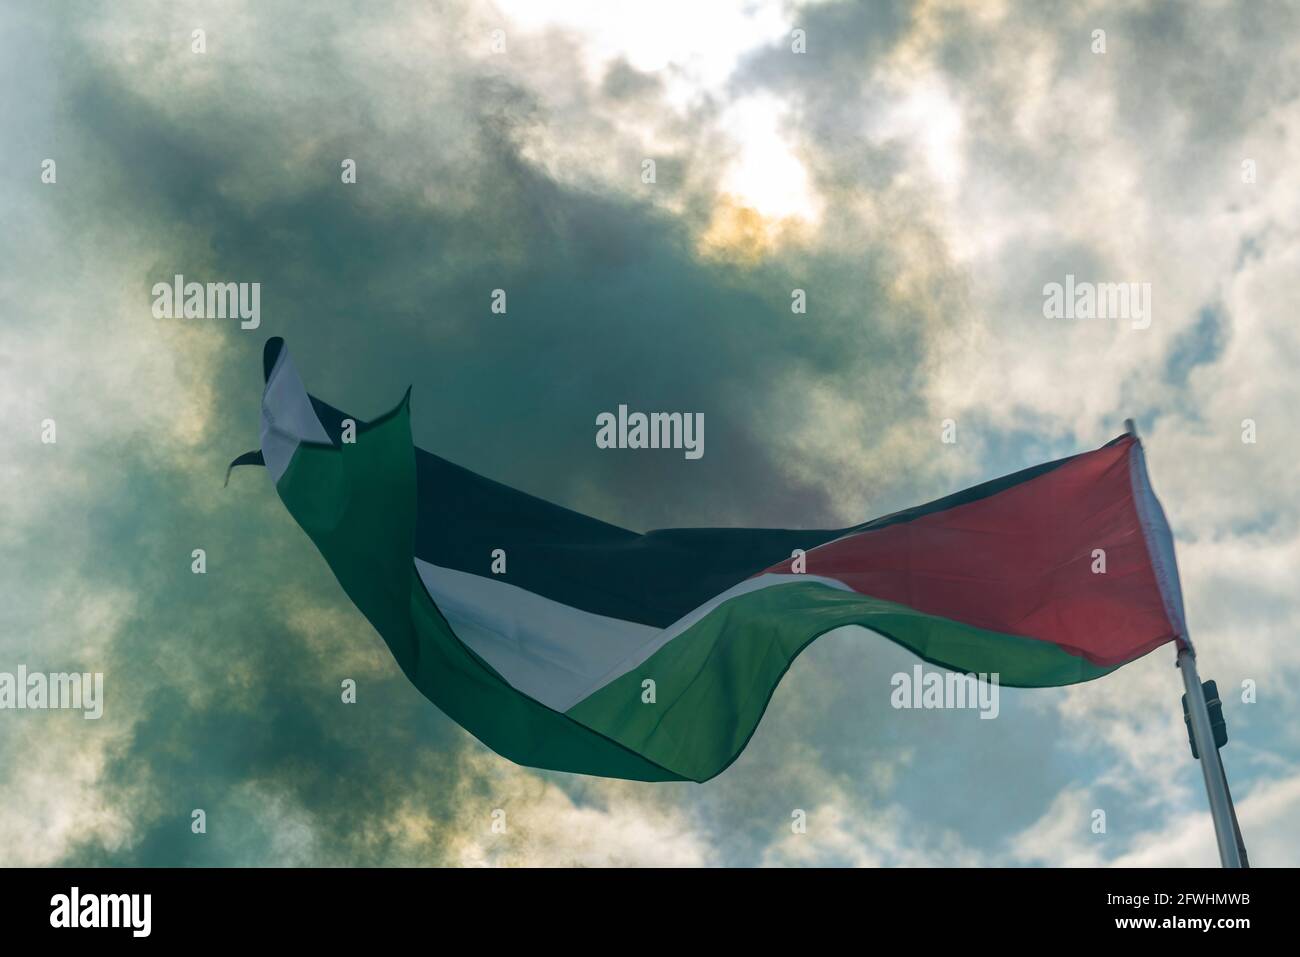 Bandiera dello Stato di Palestina è volata durante una protesta con fumo verde da una luce che blocca la luce solare Foto Stock